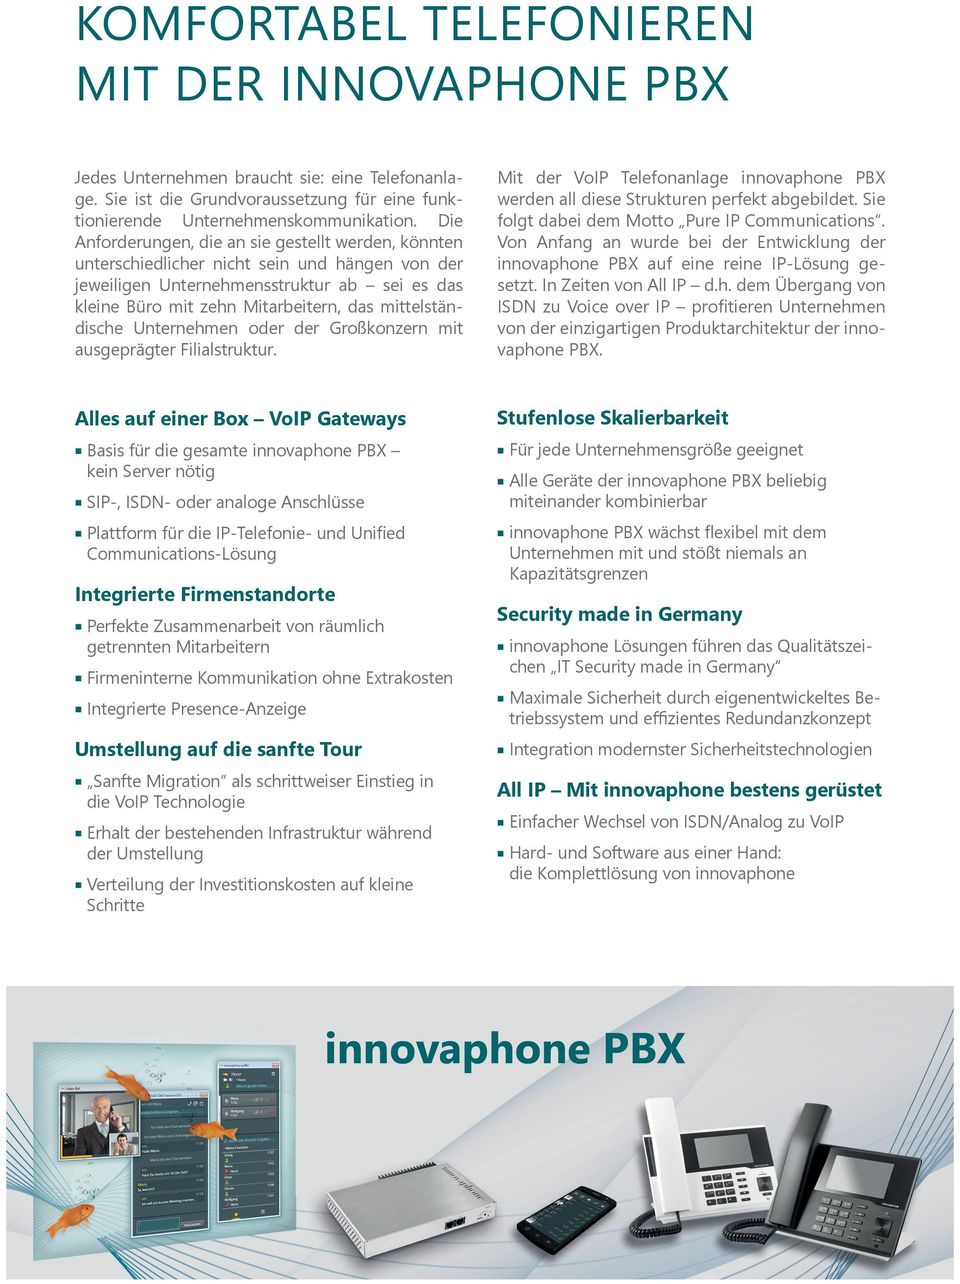 mittelständische Unternehmen oder der Großkonzern mit ausgeprägter Filialstruktur. Mit der VoIP Telefonanlage innovaphone PBX werden all diese Strukturen perfekt abgebildet.